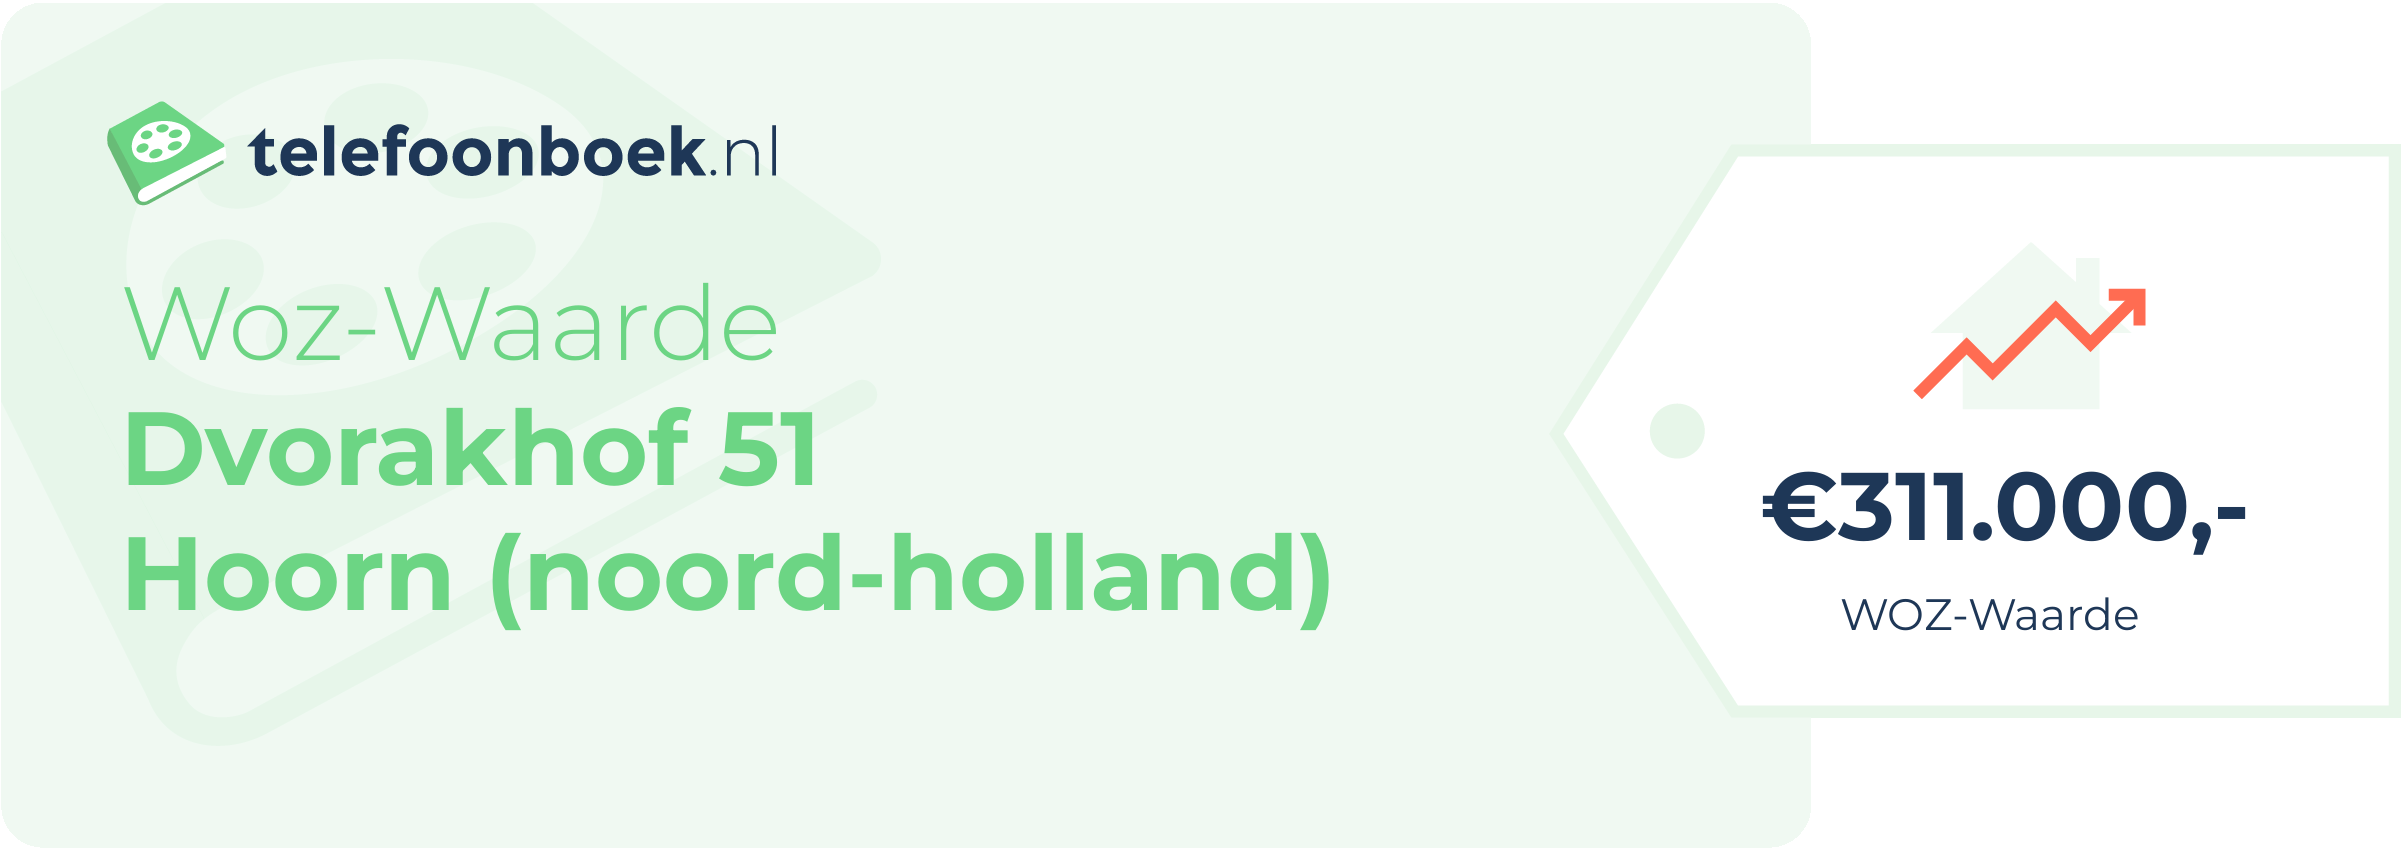 WOZ-waarde Dvorakhof 51 Hoorn (Noord-Holland)